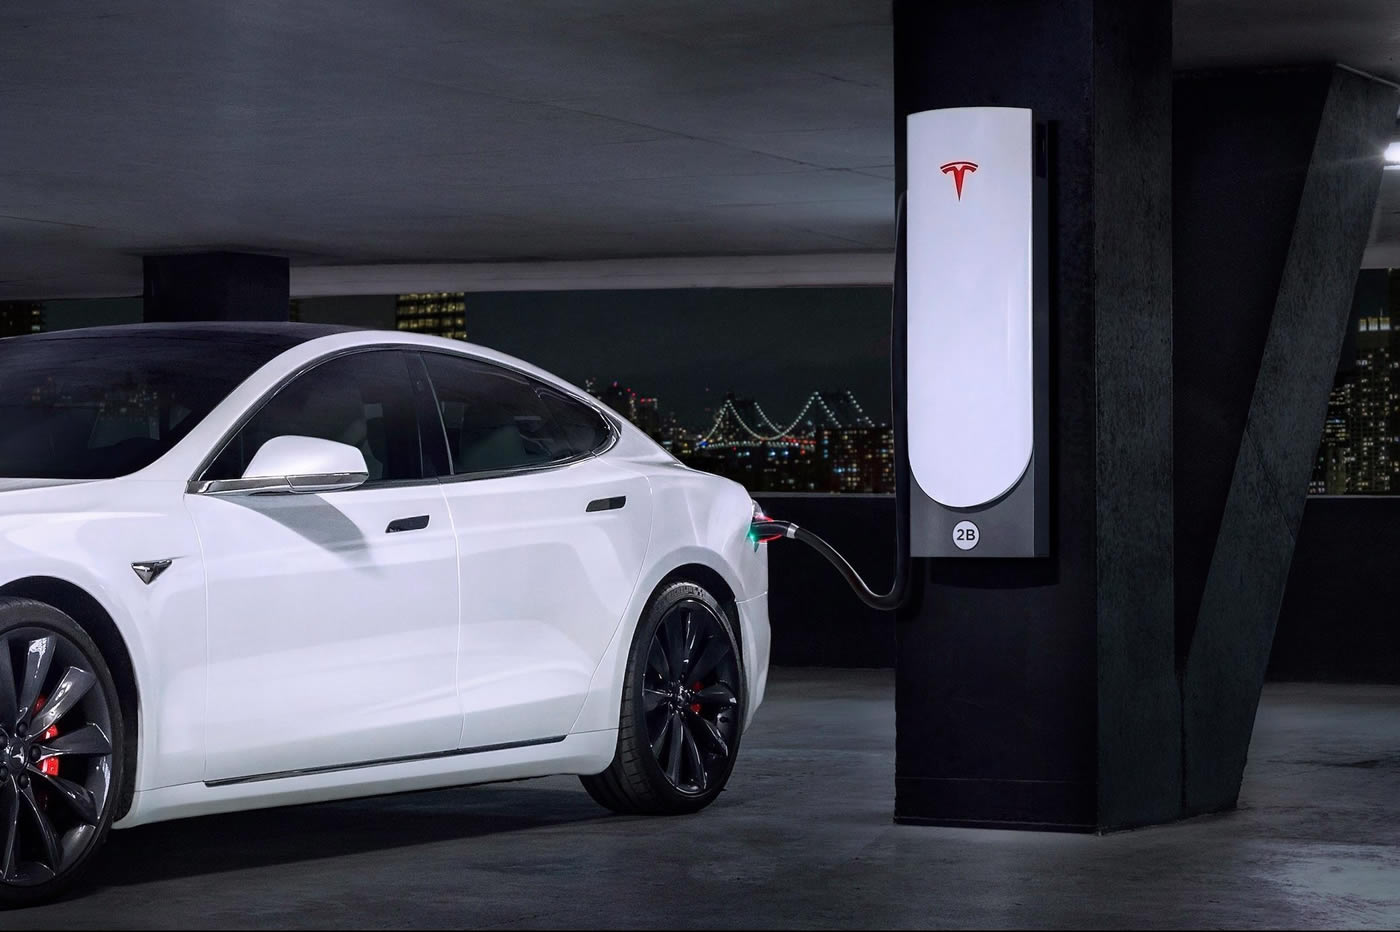 Tesla développera sa solution de recharge rapide pour les citadins sans garage privé